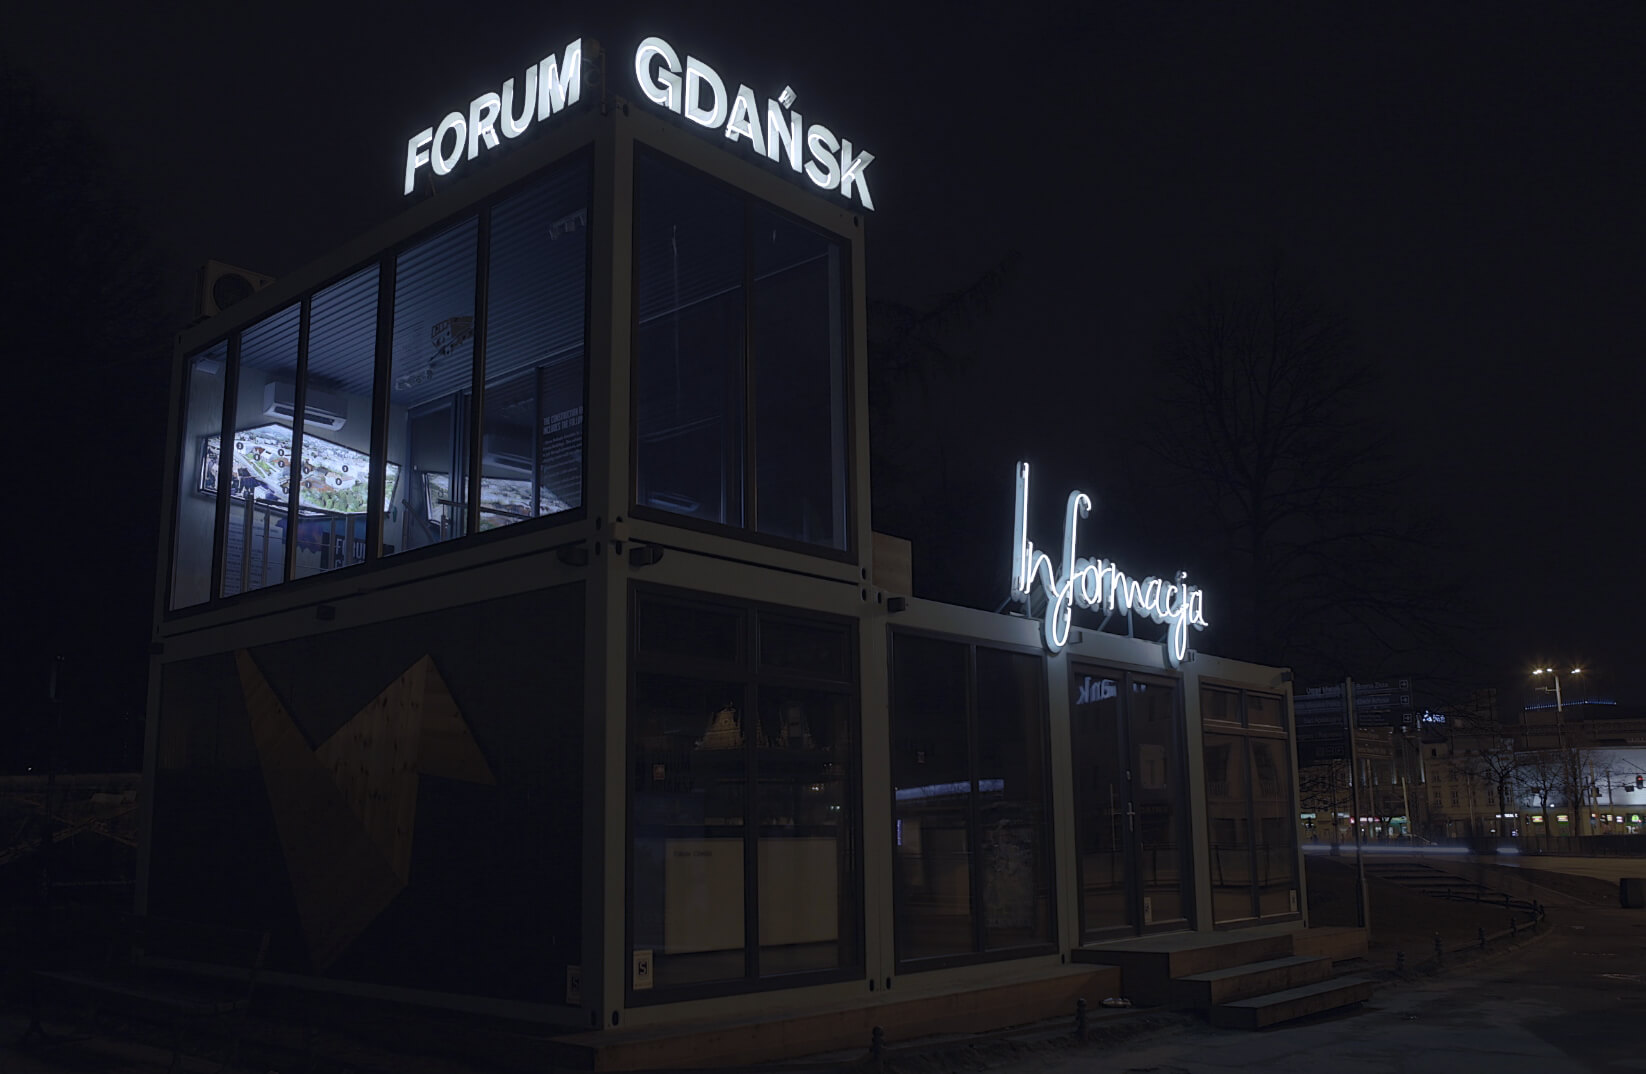 Informazioni sul Forum Gdansk - Gdańsk Forum - lettere illuminate con un'insegna al neon, montate su un telaio, poste sul tetto dell'edificio